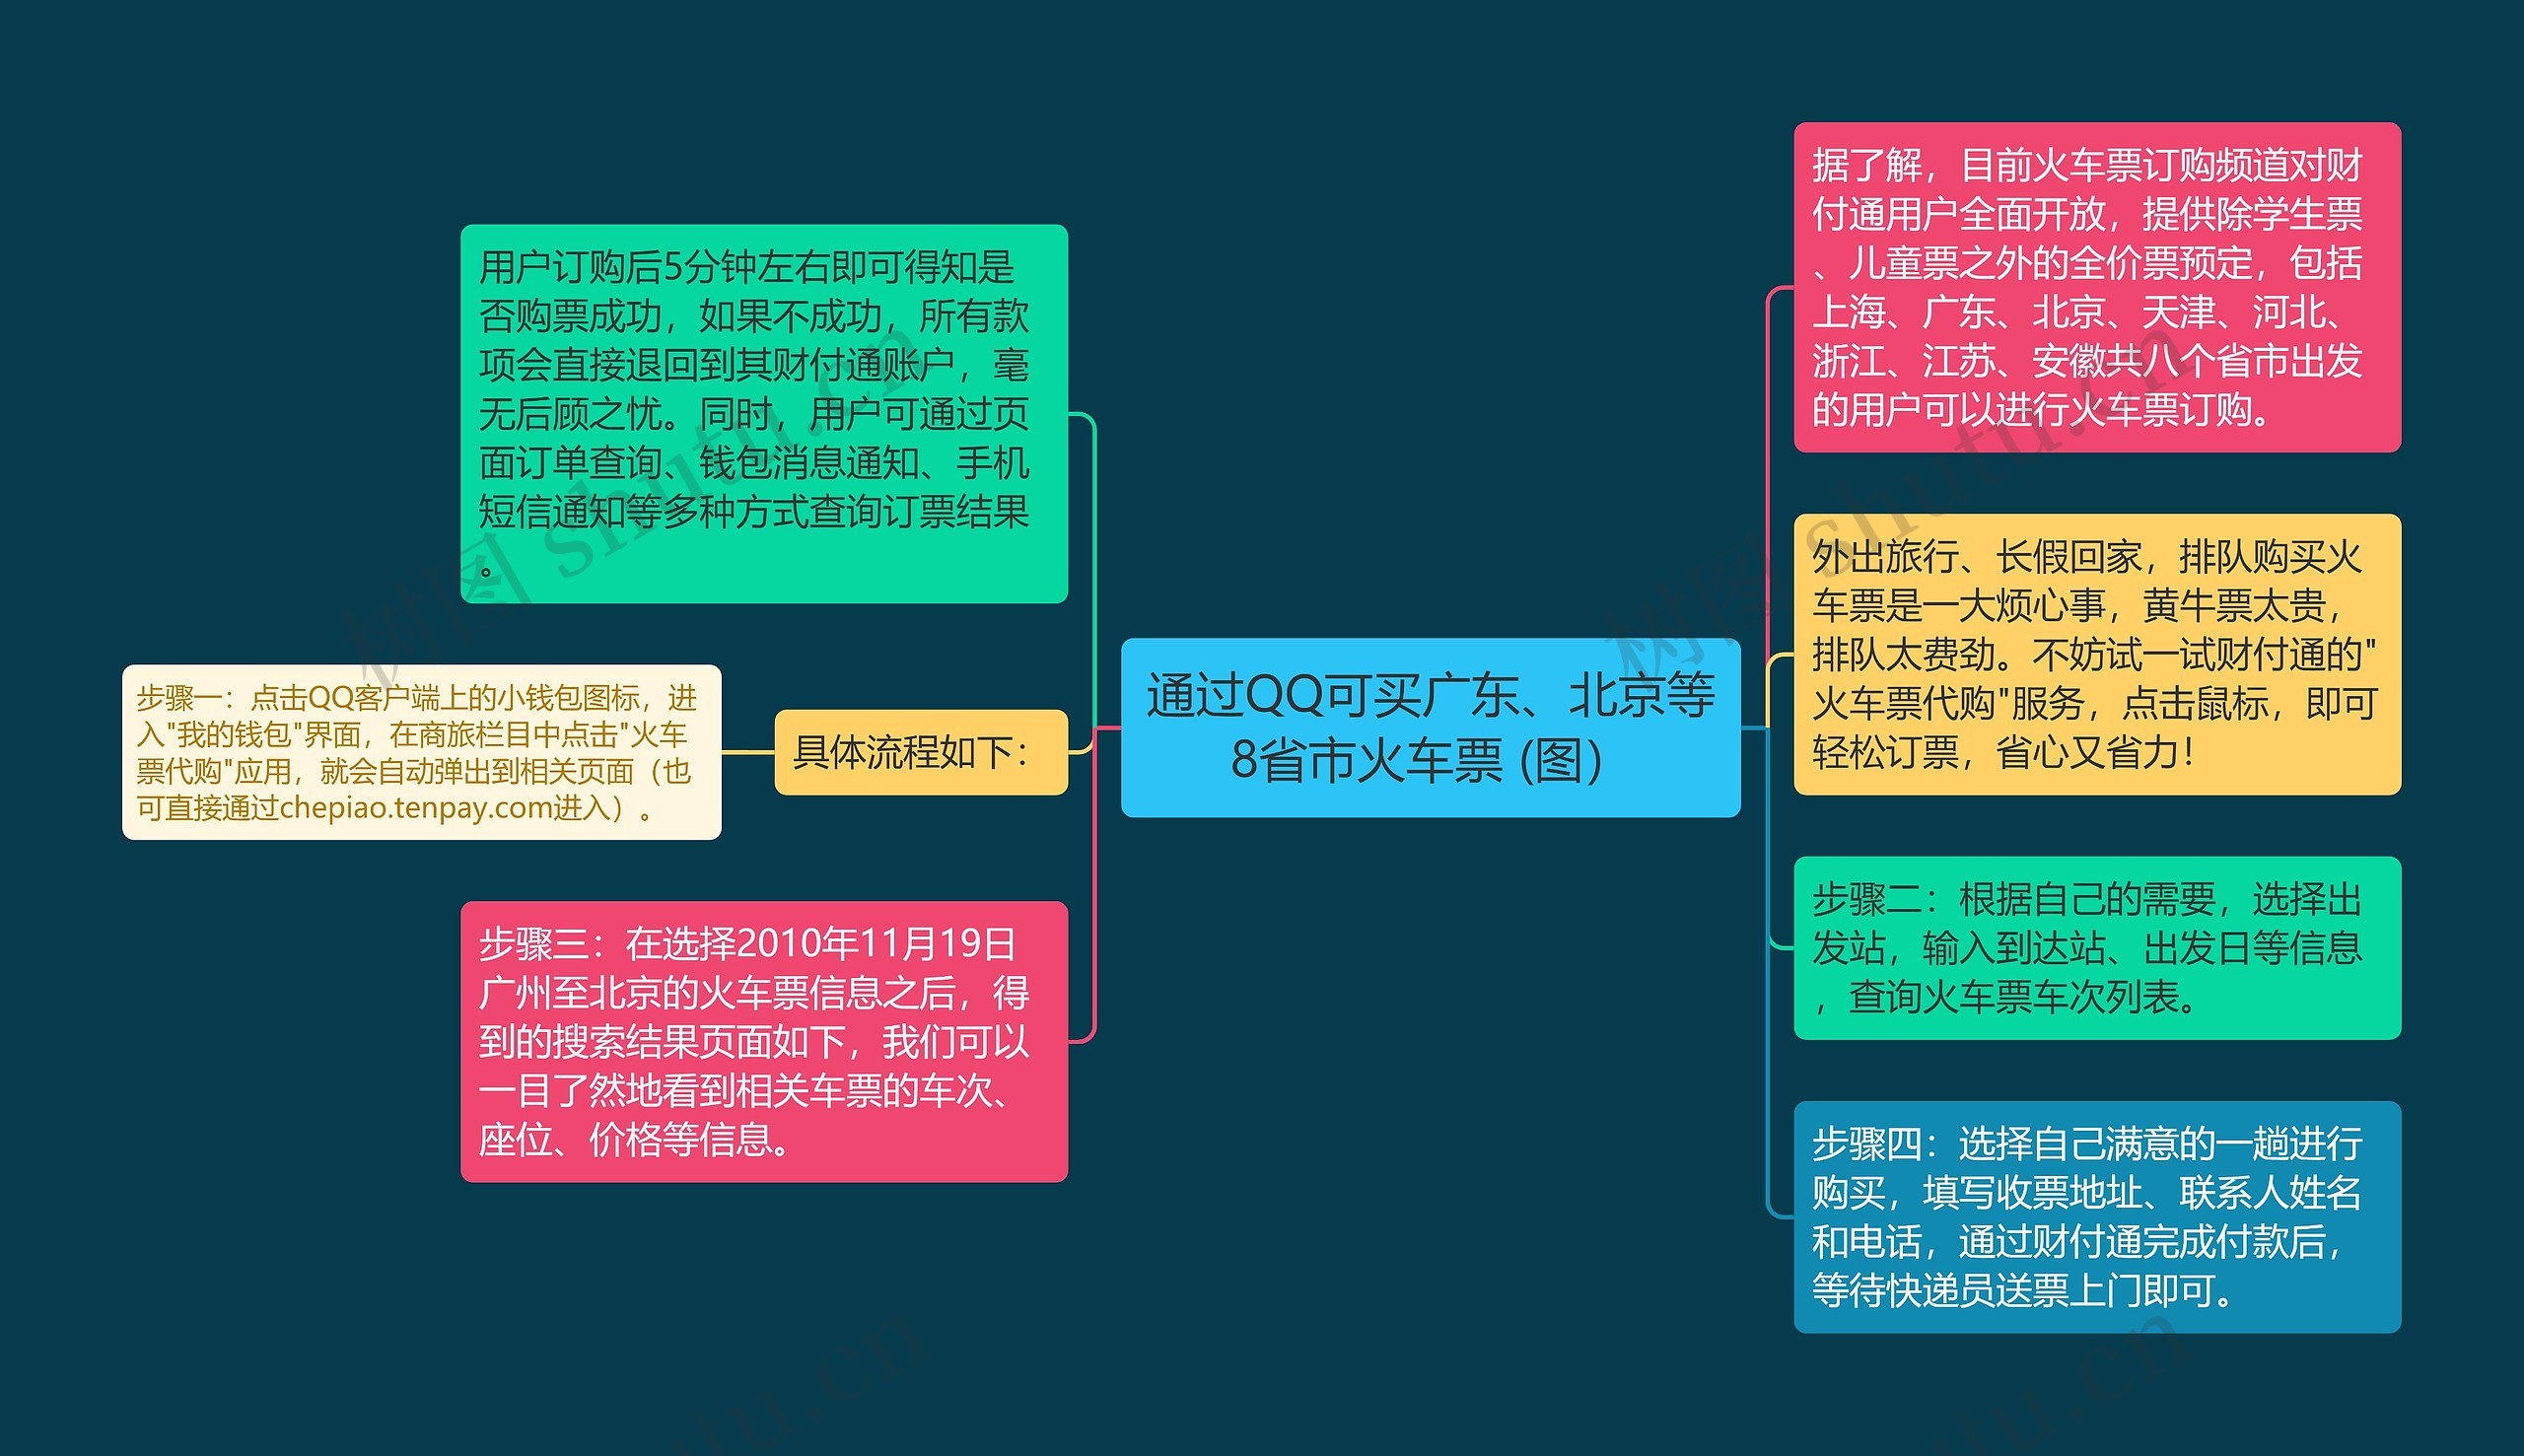 通过QQ可买广东、北京等8省市火车票 (图）思维导图